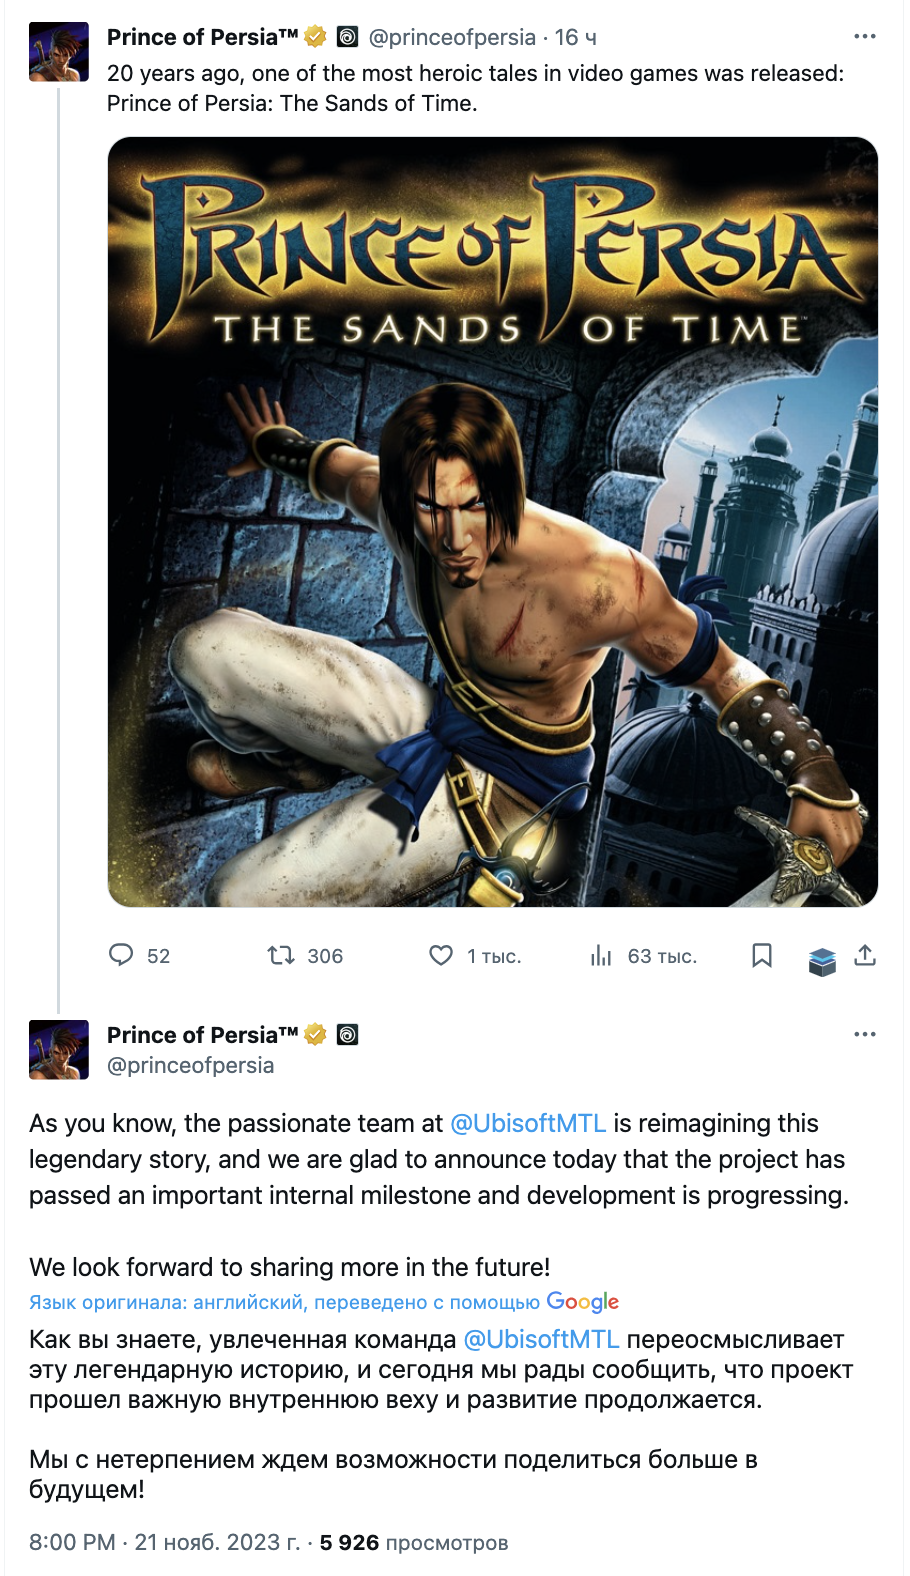 Ремейк Prince of Persia: The Sands of Time прошел важную веху в разработке, сообщила Ubisoft: с сайта NEWXBOXONE.RU